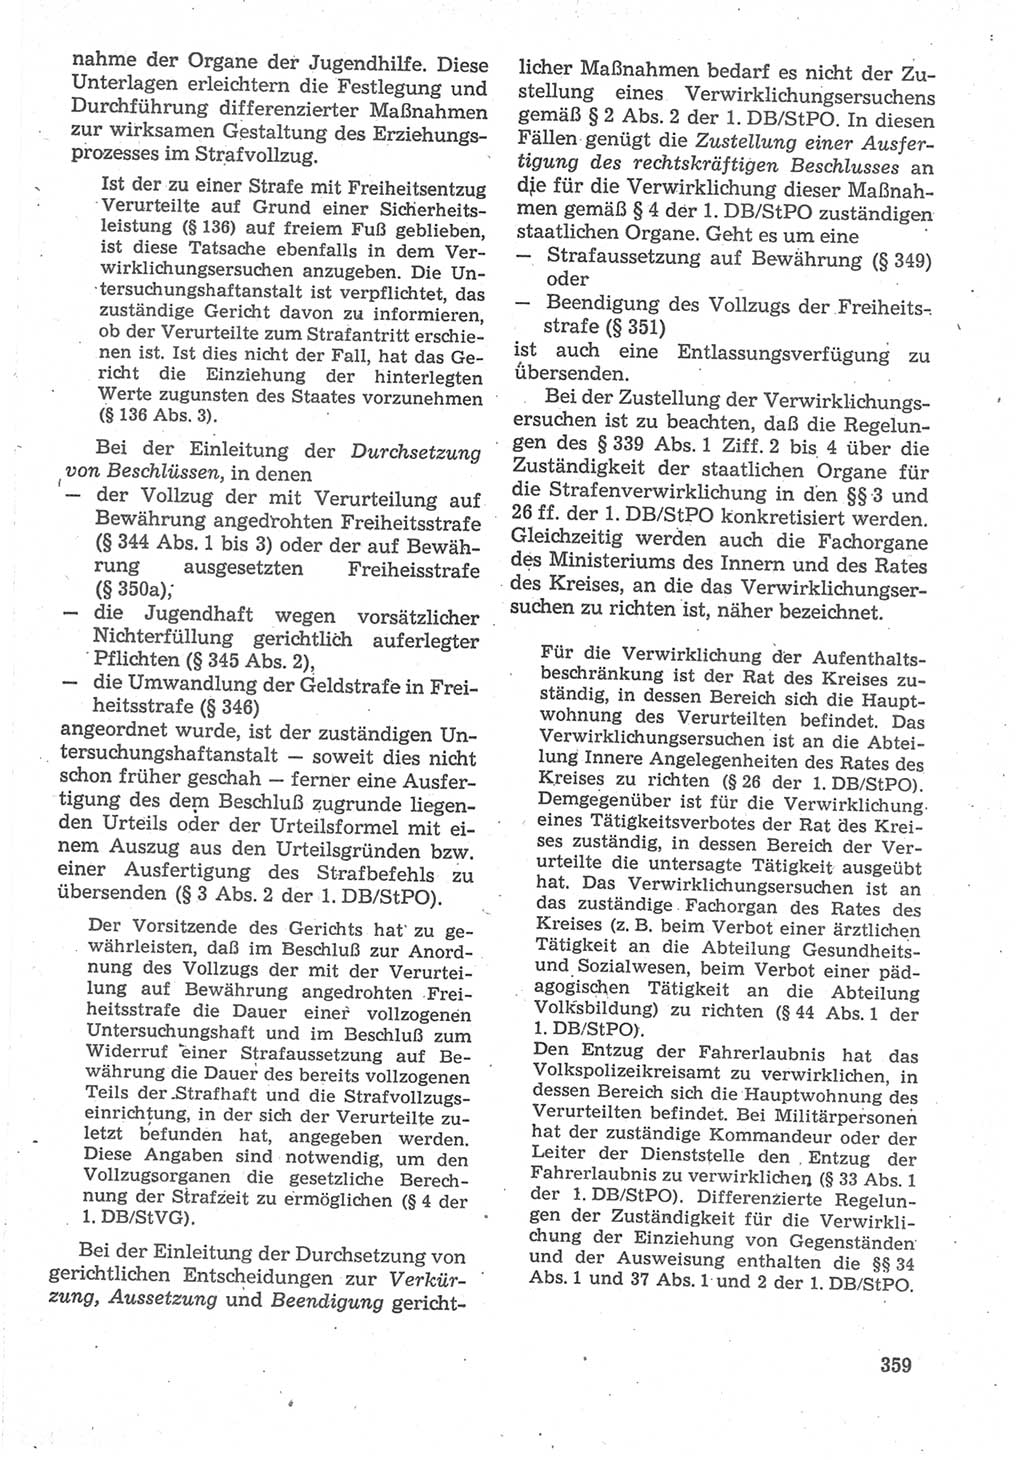 Strafverfahrensrecht [Deutsche Demokratische Republik (DDR)], Lehrbuch 1987, Seite 359 (Strafverf.-R. DDR Lb. 1987, S. 359)